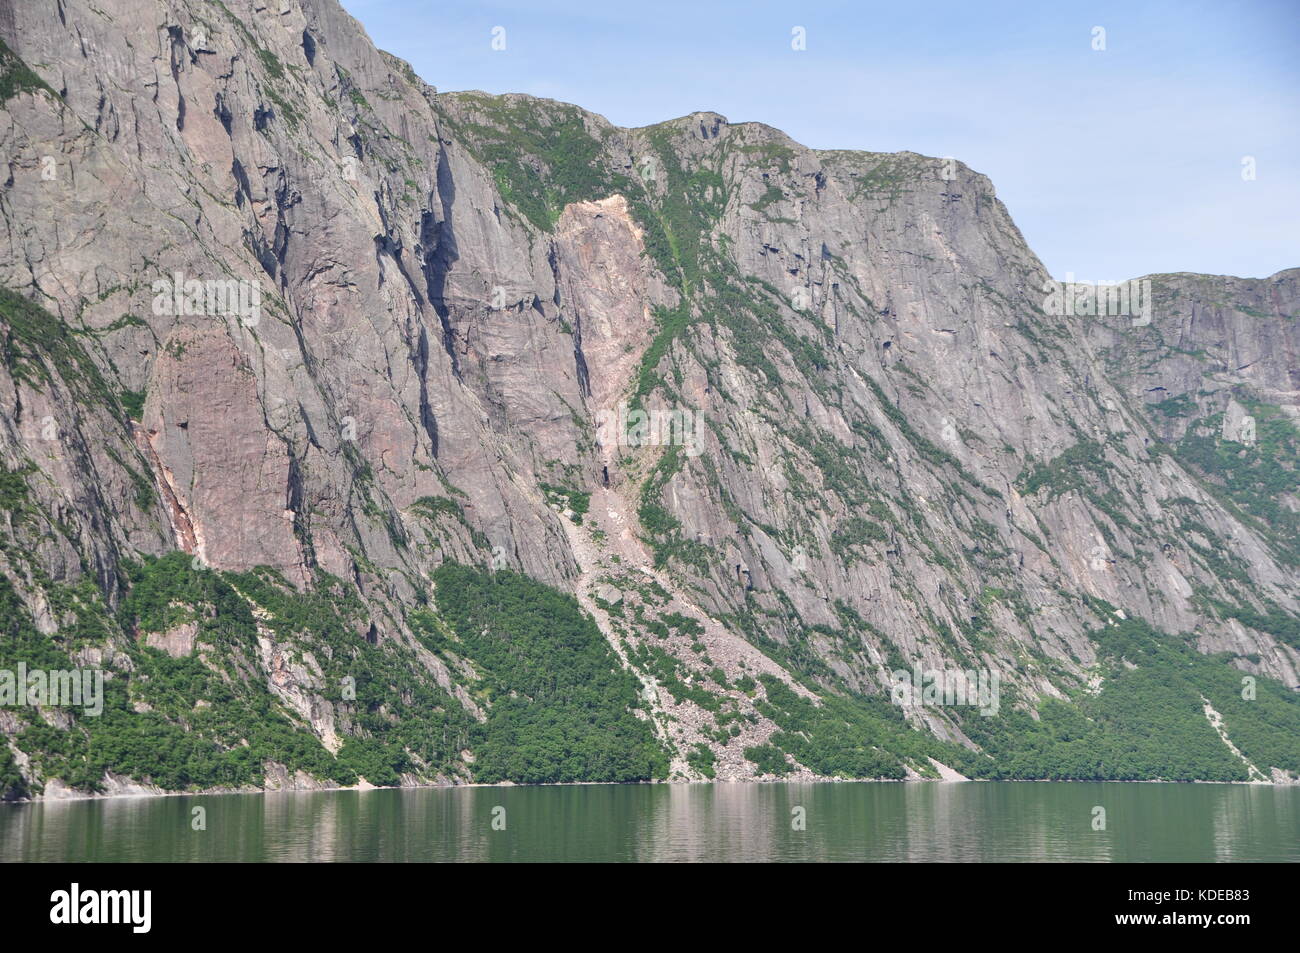 Chutes de pierres historiques le long des murs rocheux de l'étang Western Brook, un fjord d'eau douce dans le parc national du Gros-Morne, à Terre-Neuve, Canada Banque D'Images